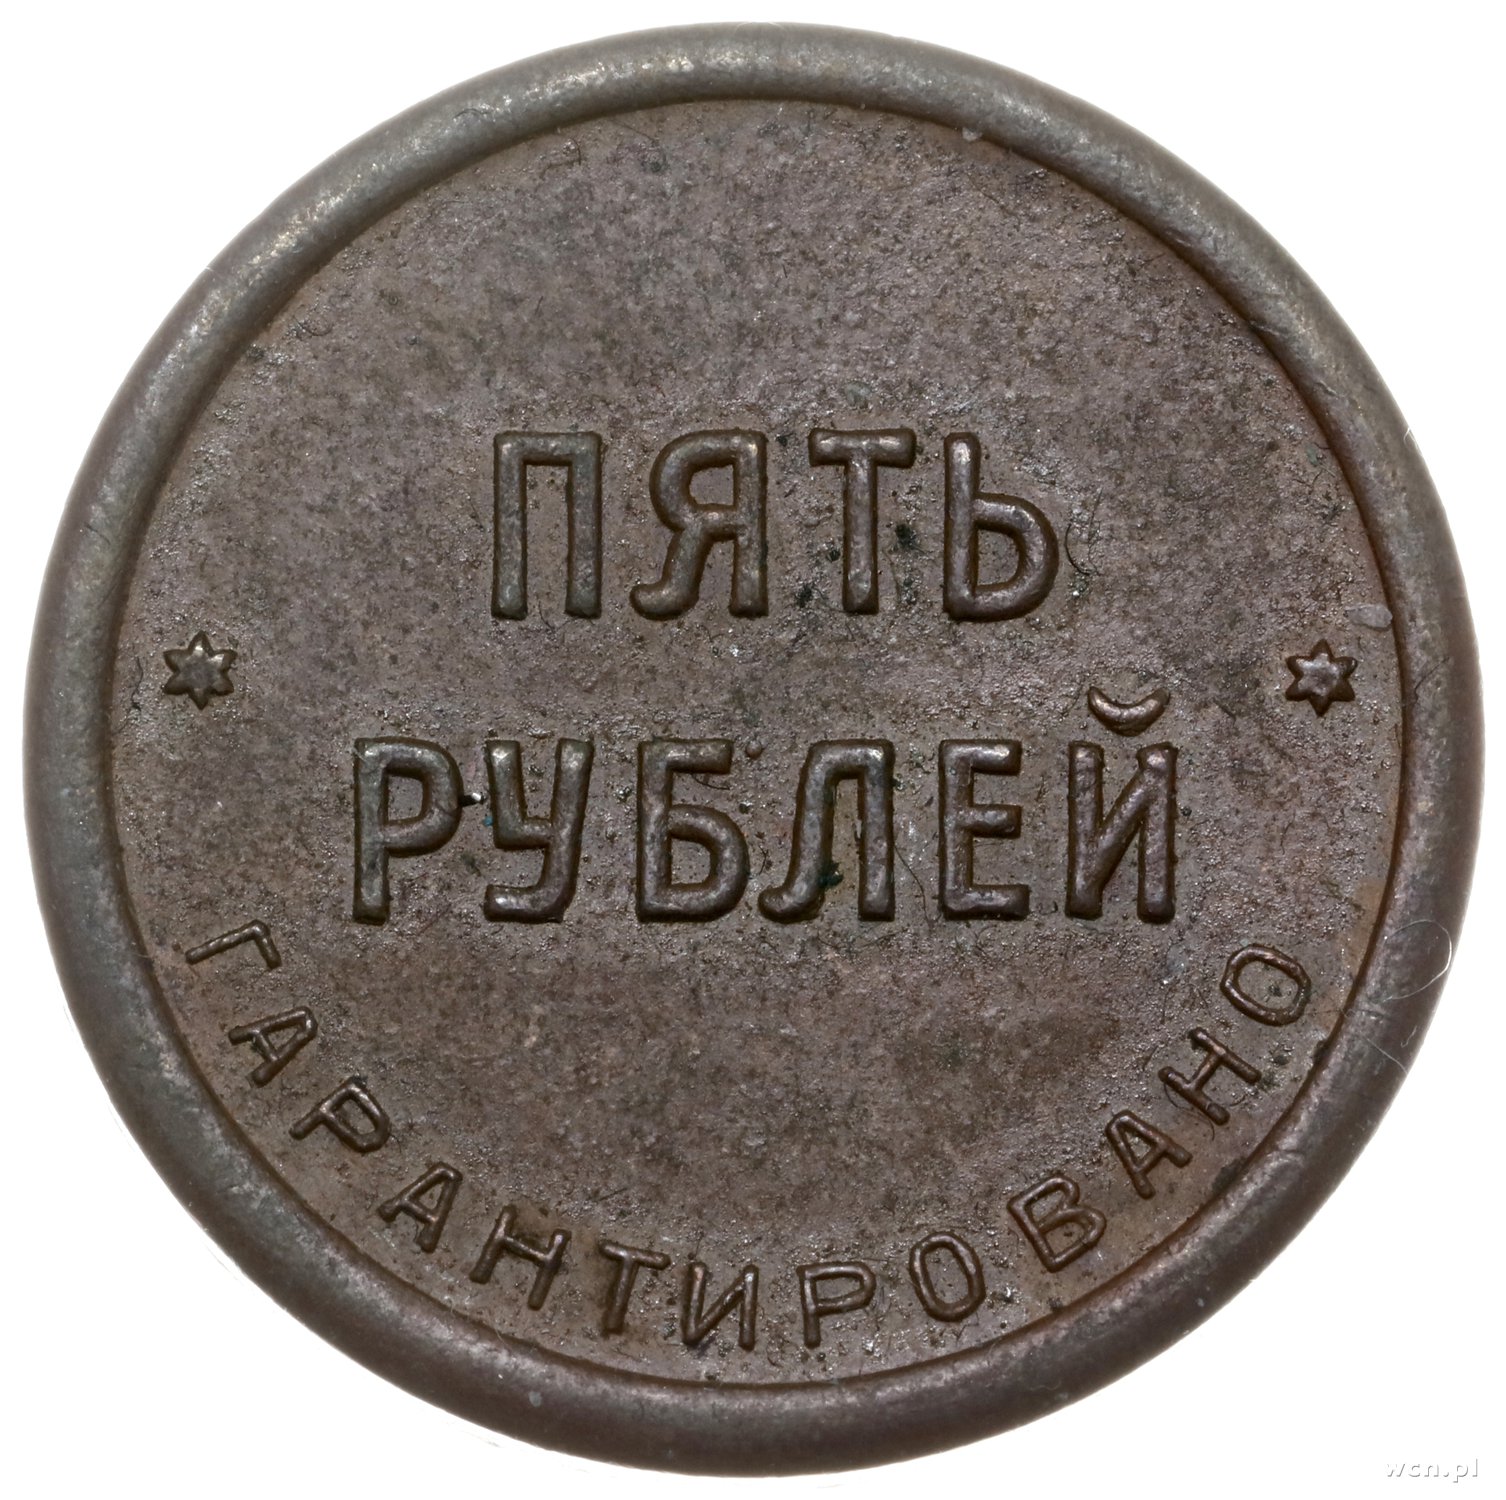 Копейка 1997 года цена. Россия 1 копейка 2014 год (м). Копейки 1997 года стоимость